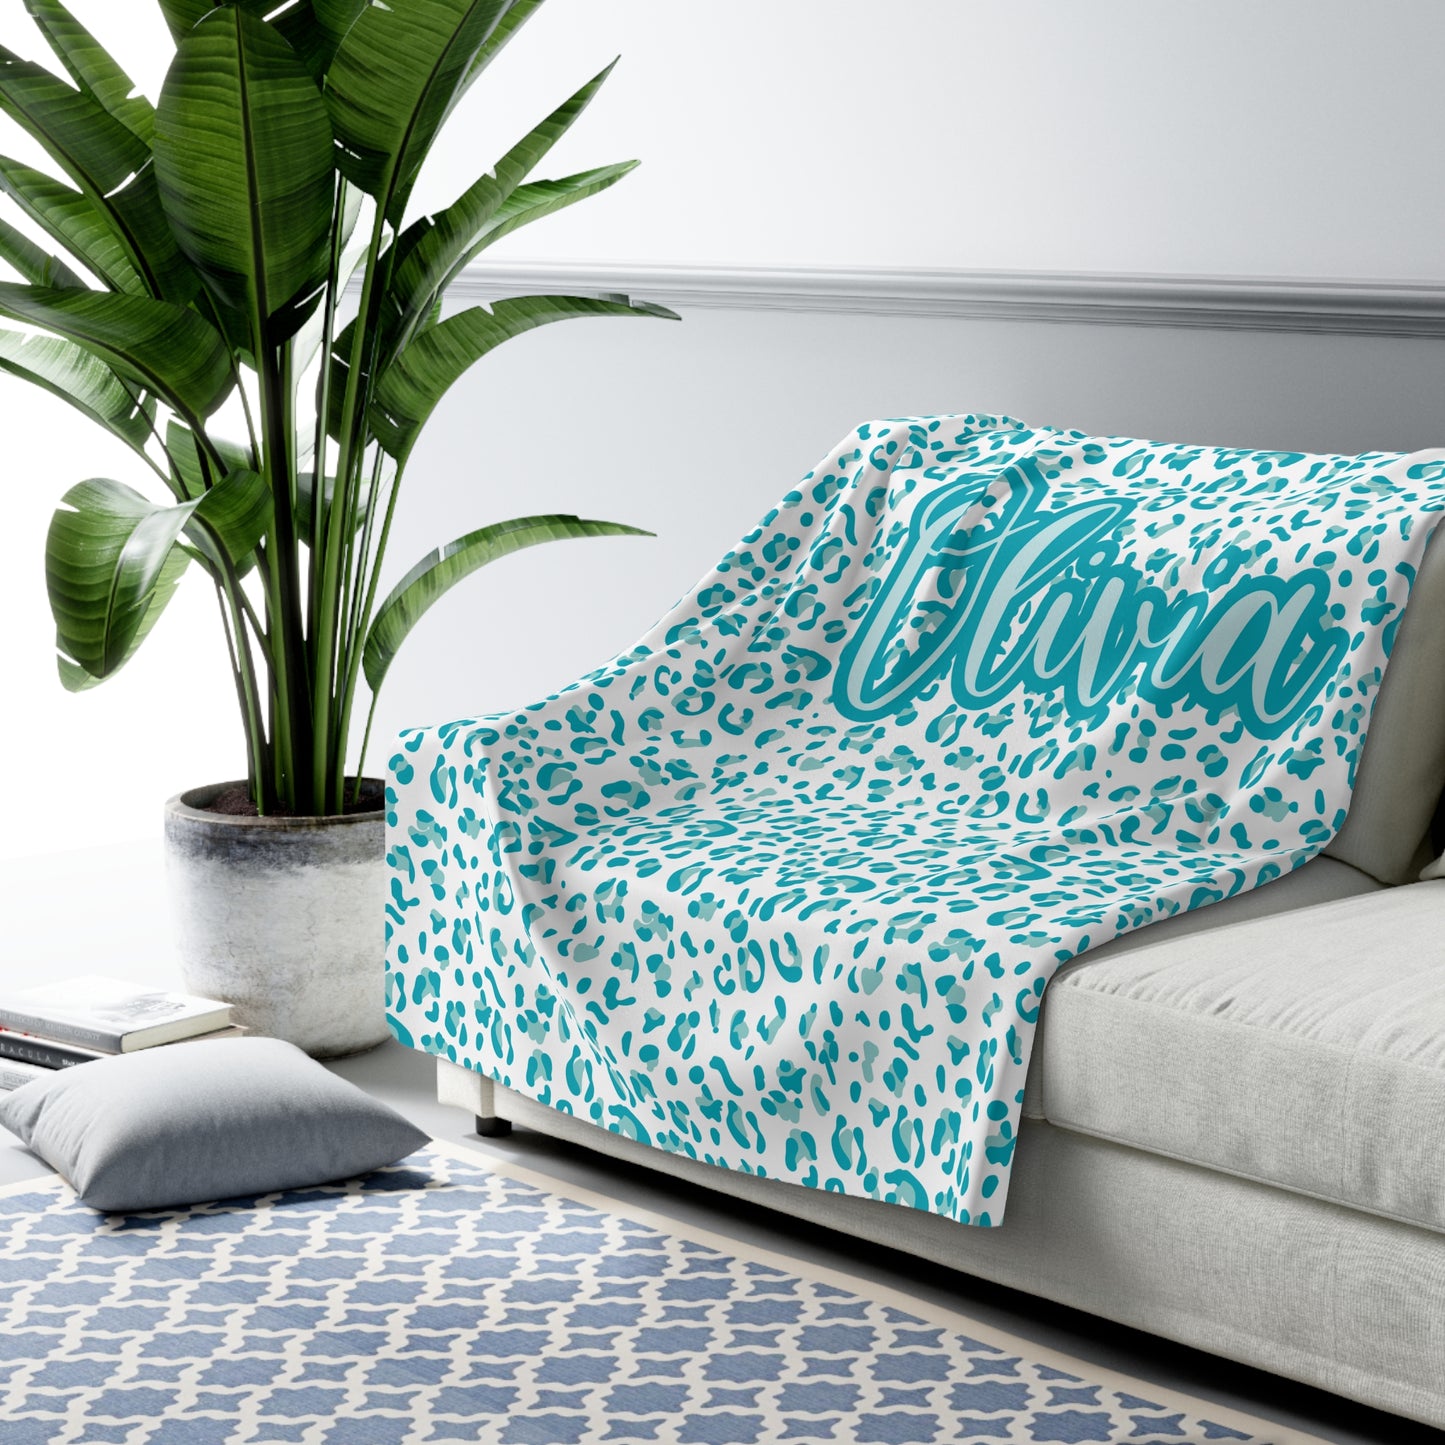 Personalized Sherpa Blanket / Leopard Print Blanket